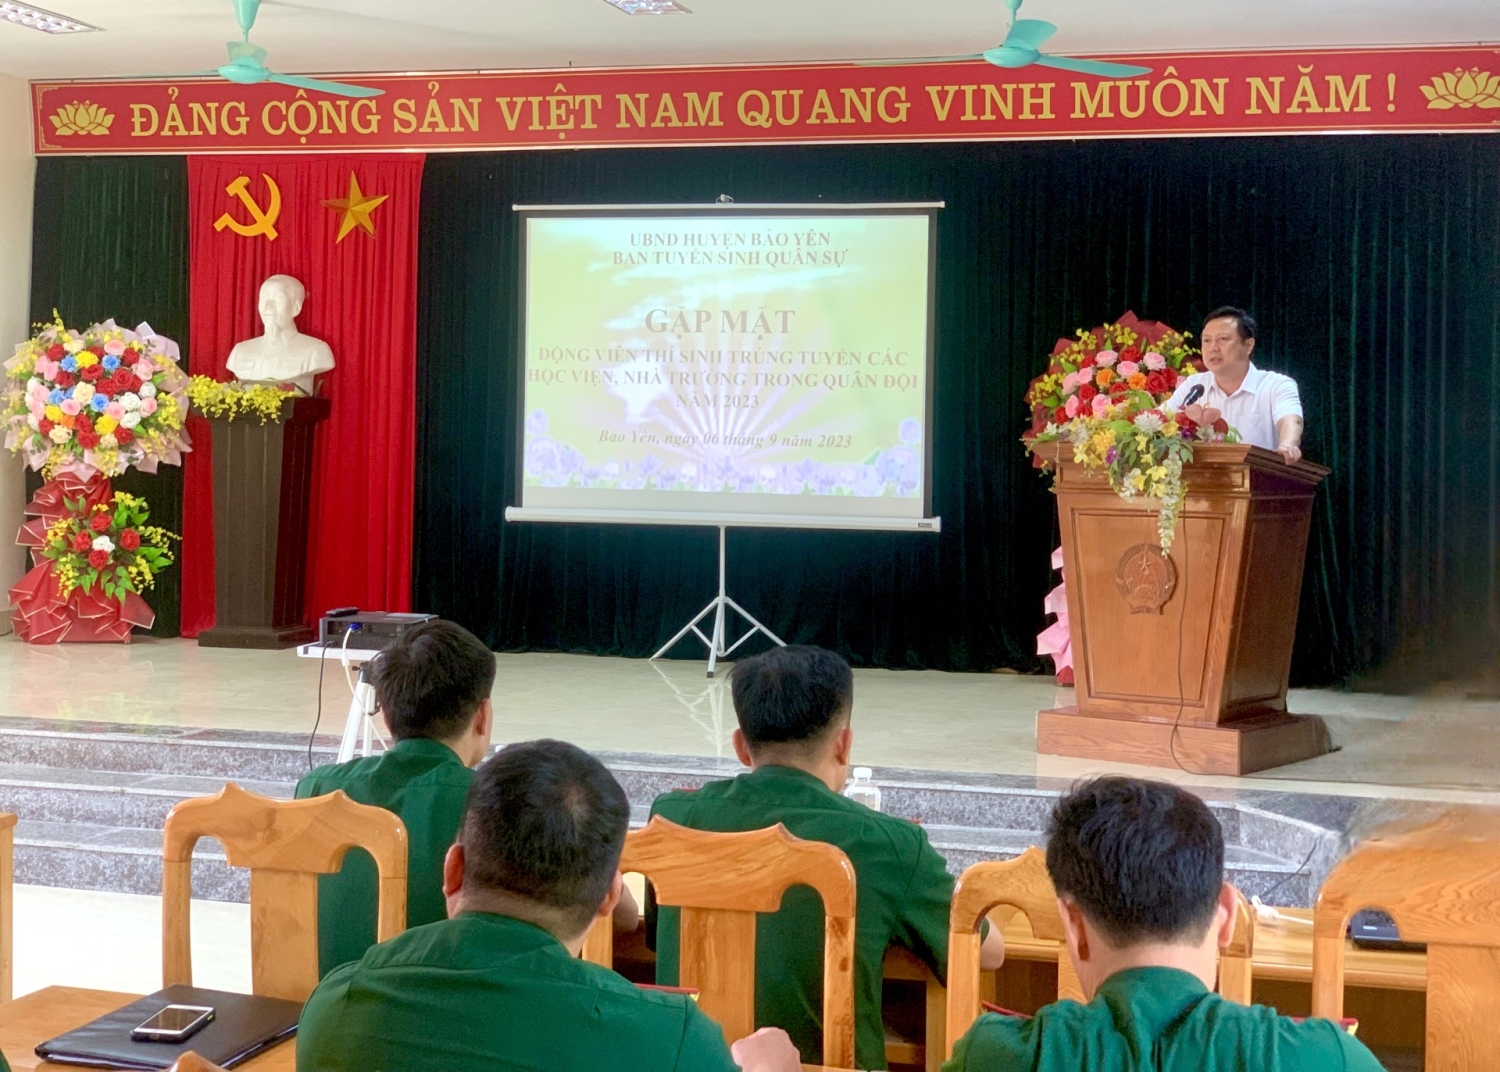 Đồng chí Nguyễn Anh Dũng, Phó Chủ tịch UBND huyện, Trưởng Ban Tuyển sinh quân sự huyện Bảo Yên phát biểu tại buổi gặp mặt